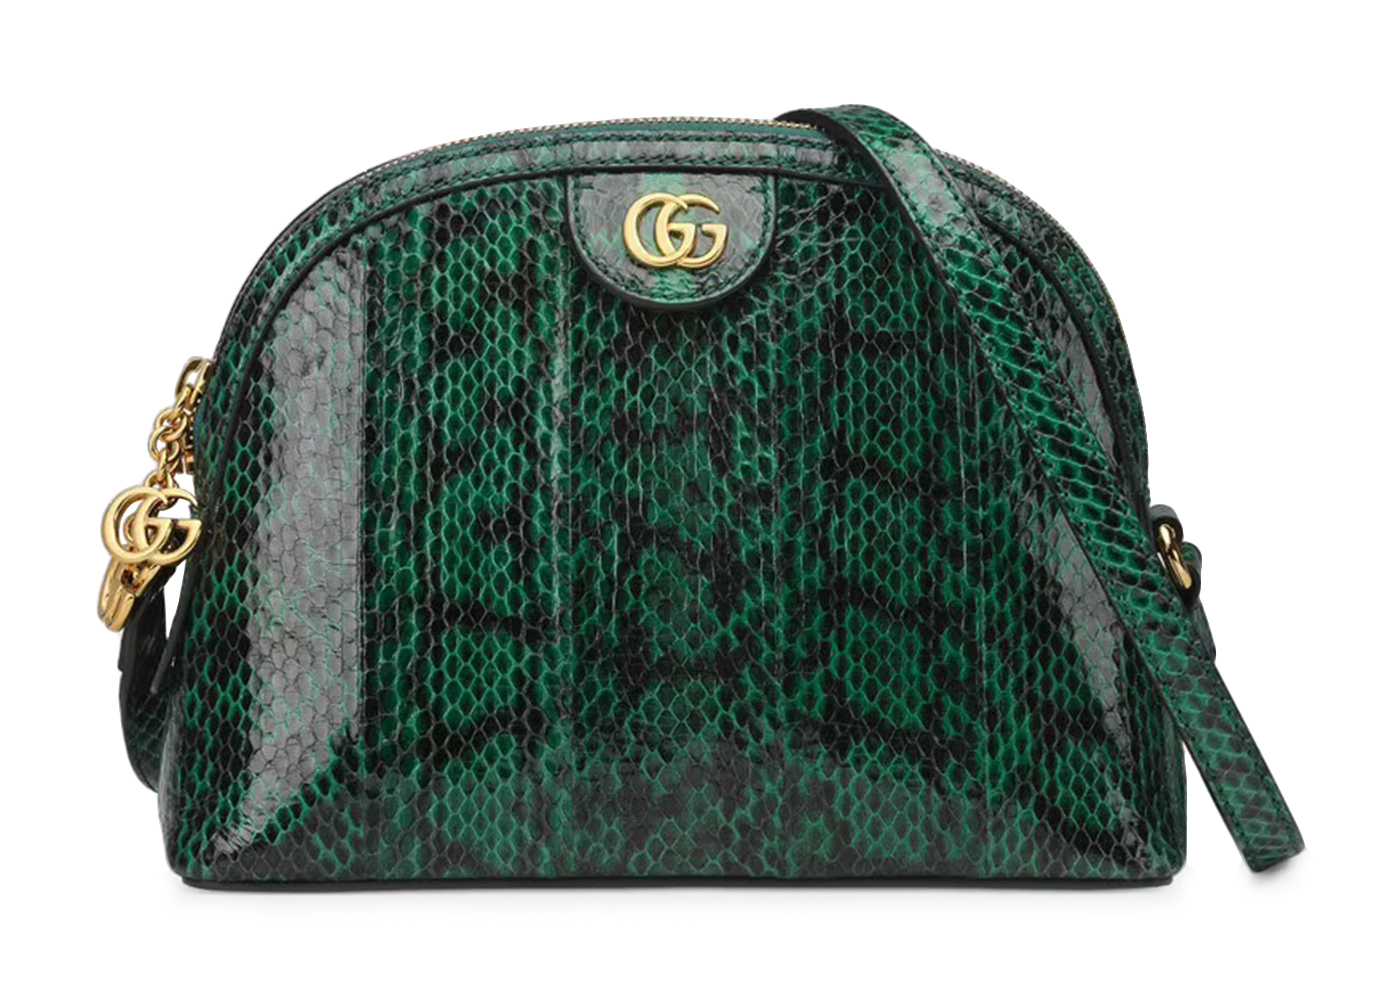 Authentic Gucci Metallic Python Leather 1973 Chain Small Shoulder Bag –  Paris Station Shop